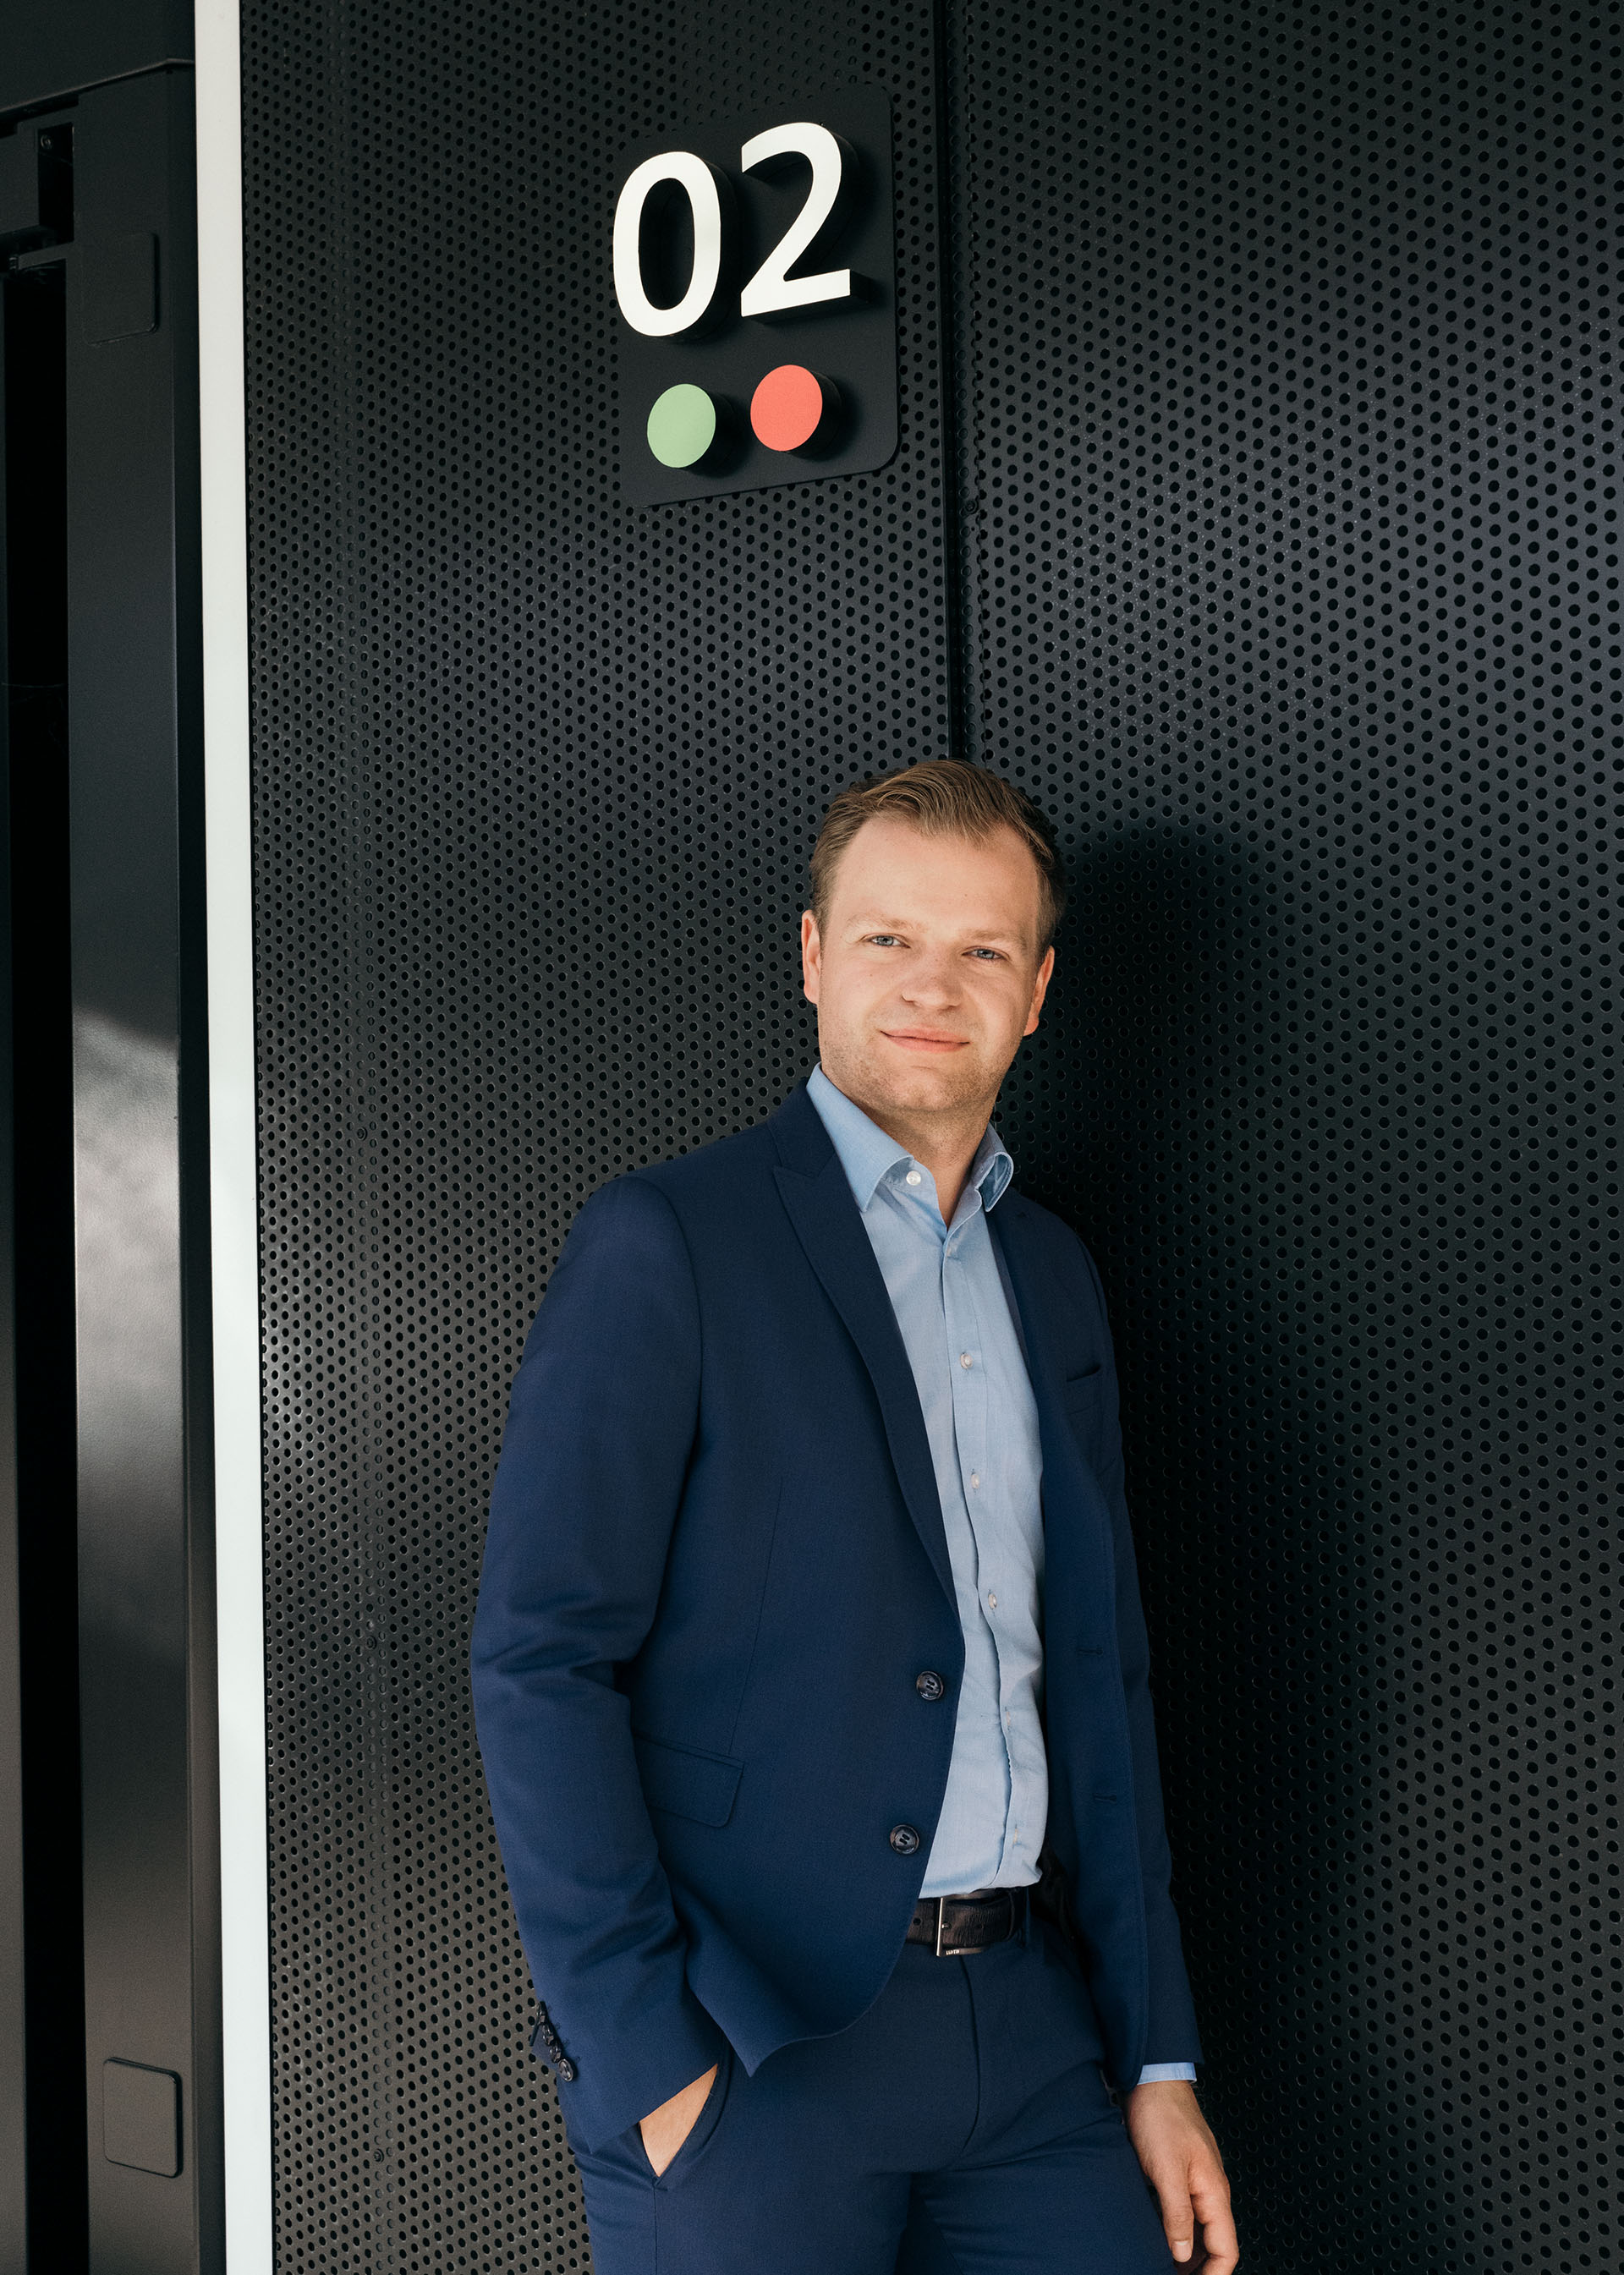 Malte Vömel, chargé de projet pour la stratégie de décarbonisation, devant l'Audi charging hub.